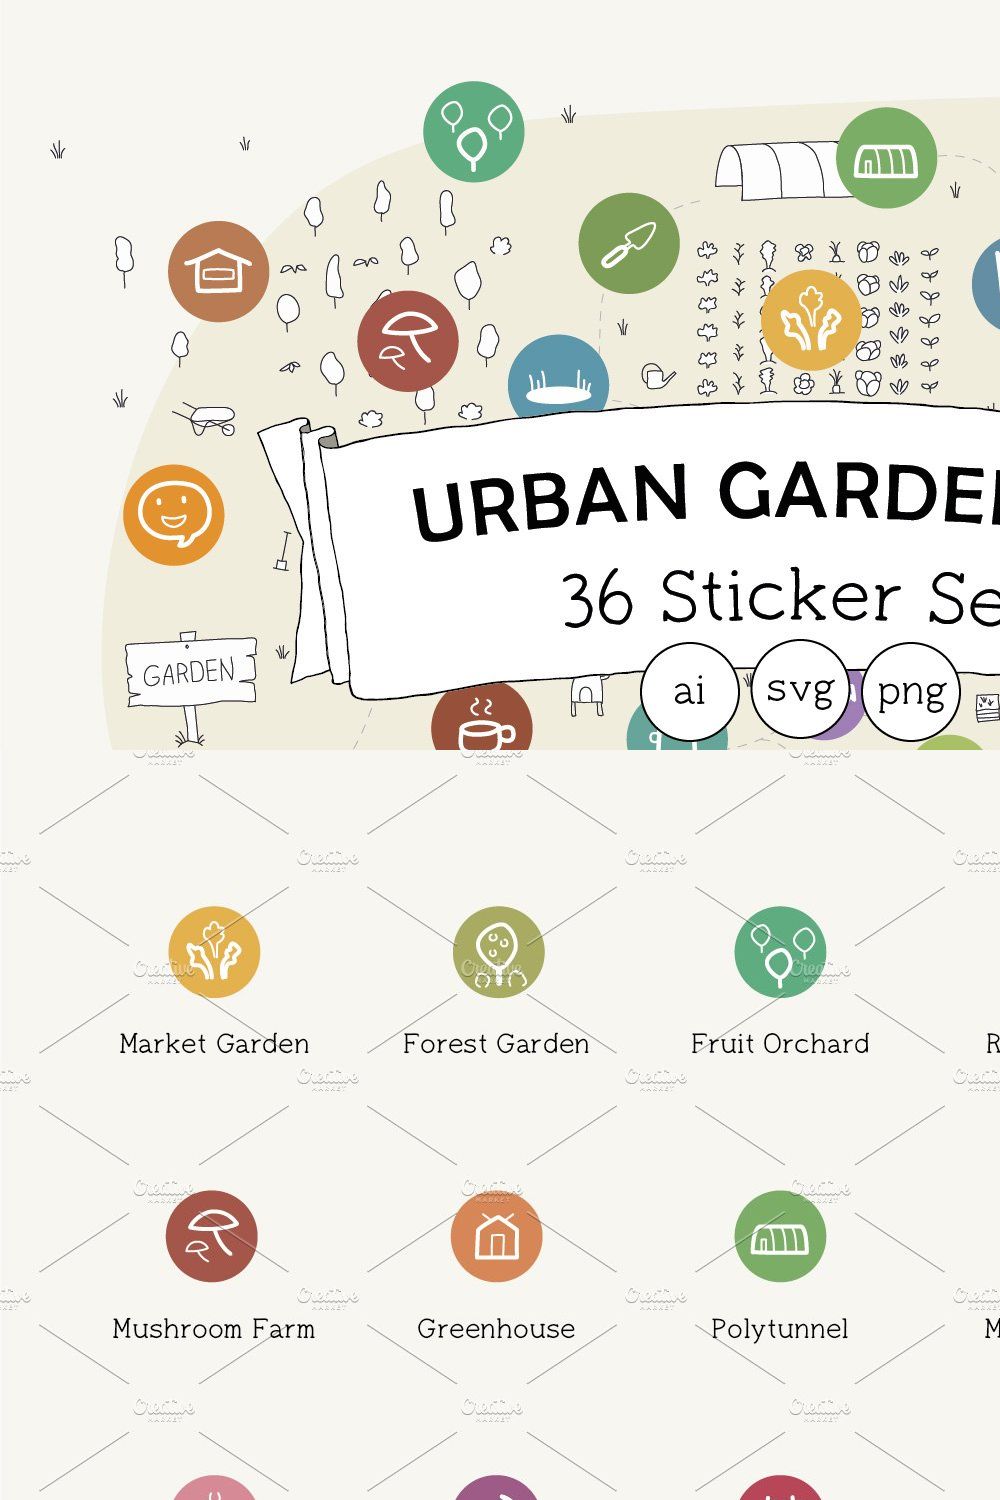 Urban Gardening 36 Sticker Set pinterest preview image.